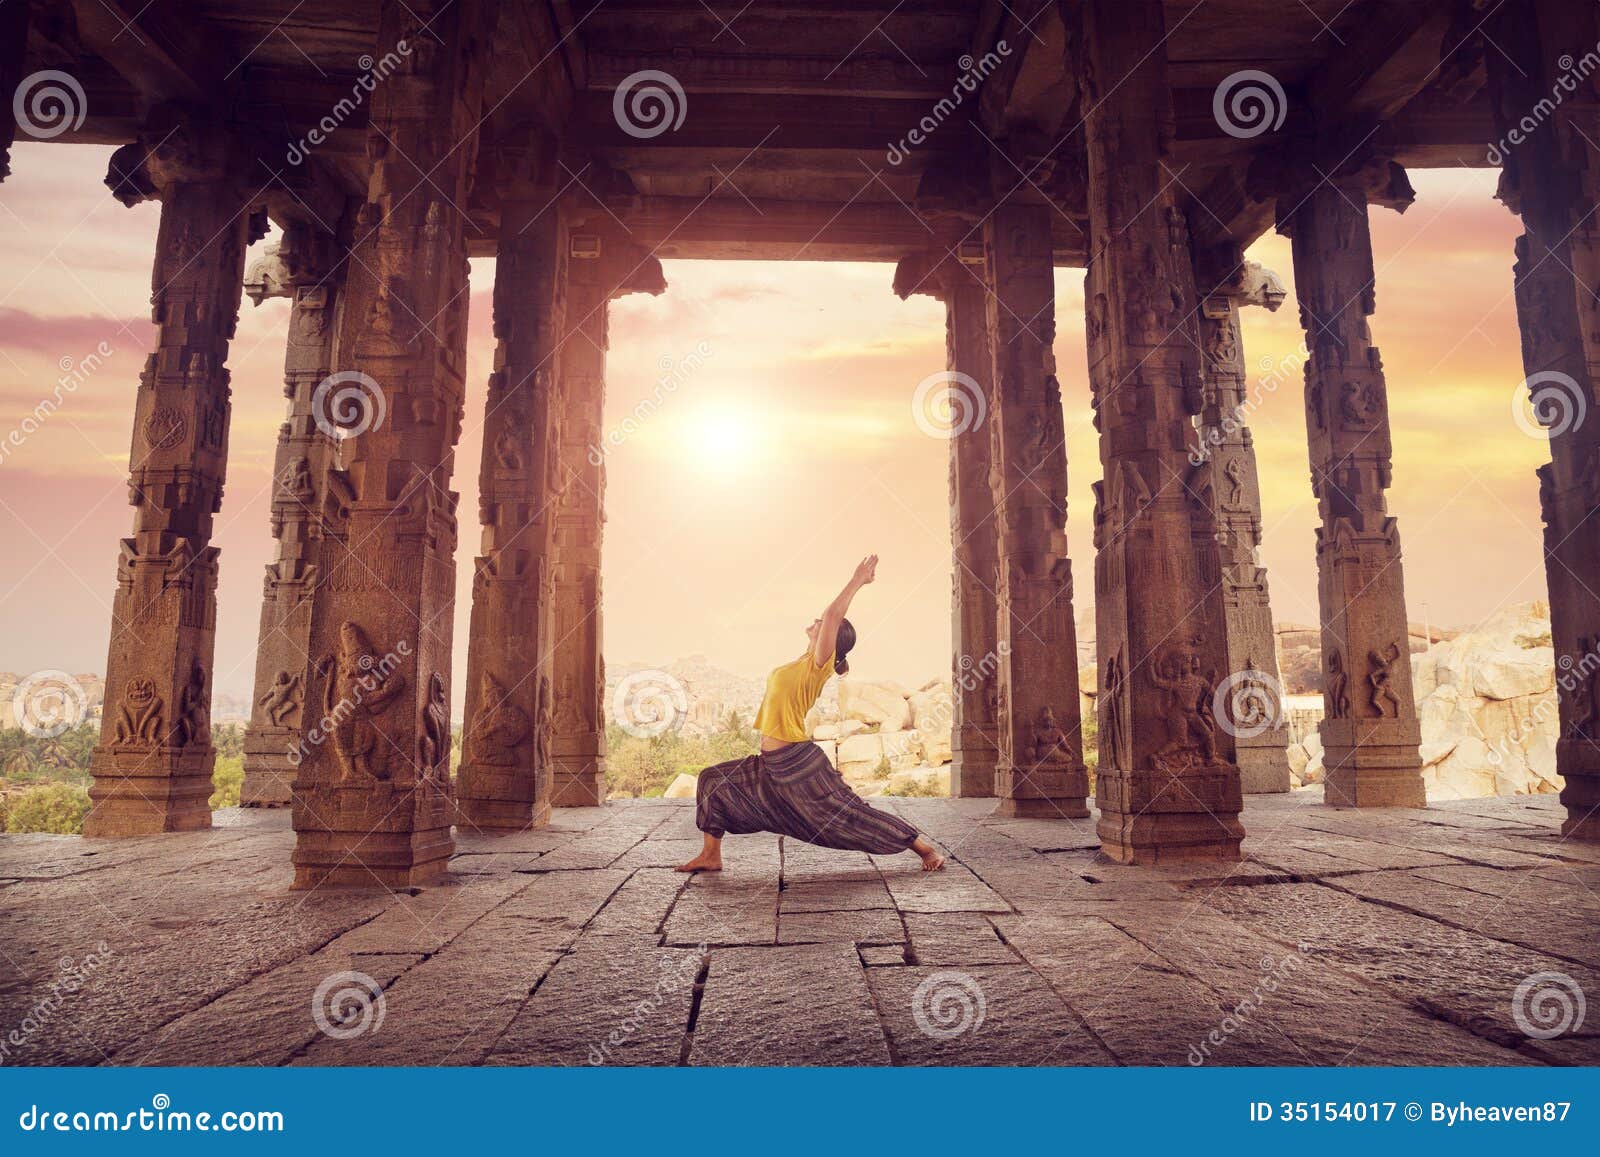 yoga in hampi temple